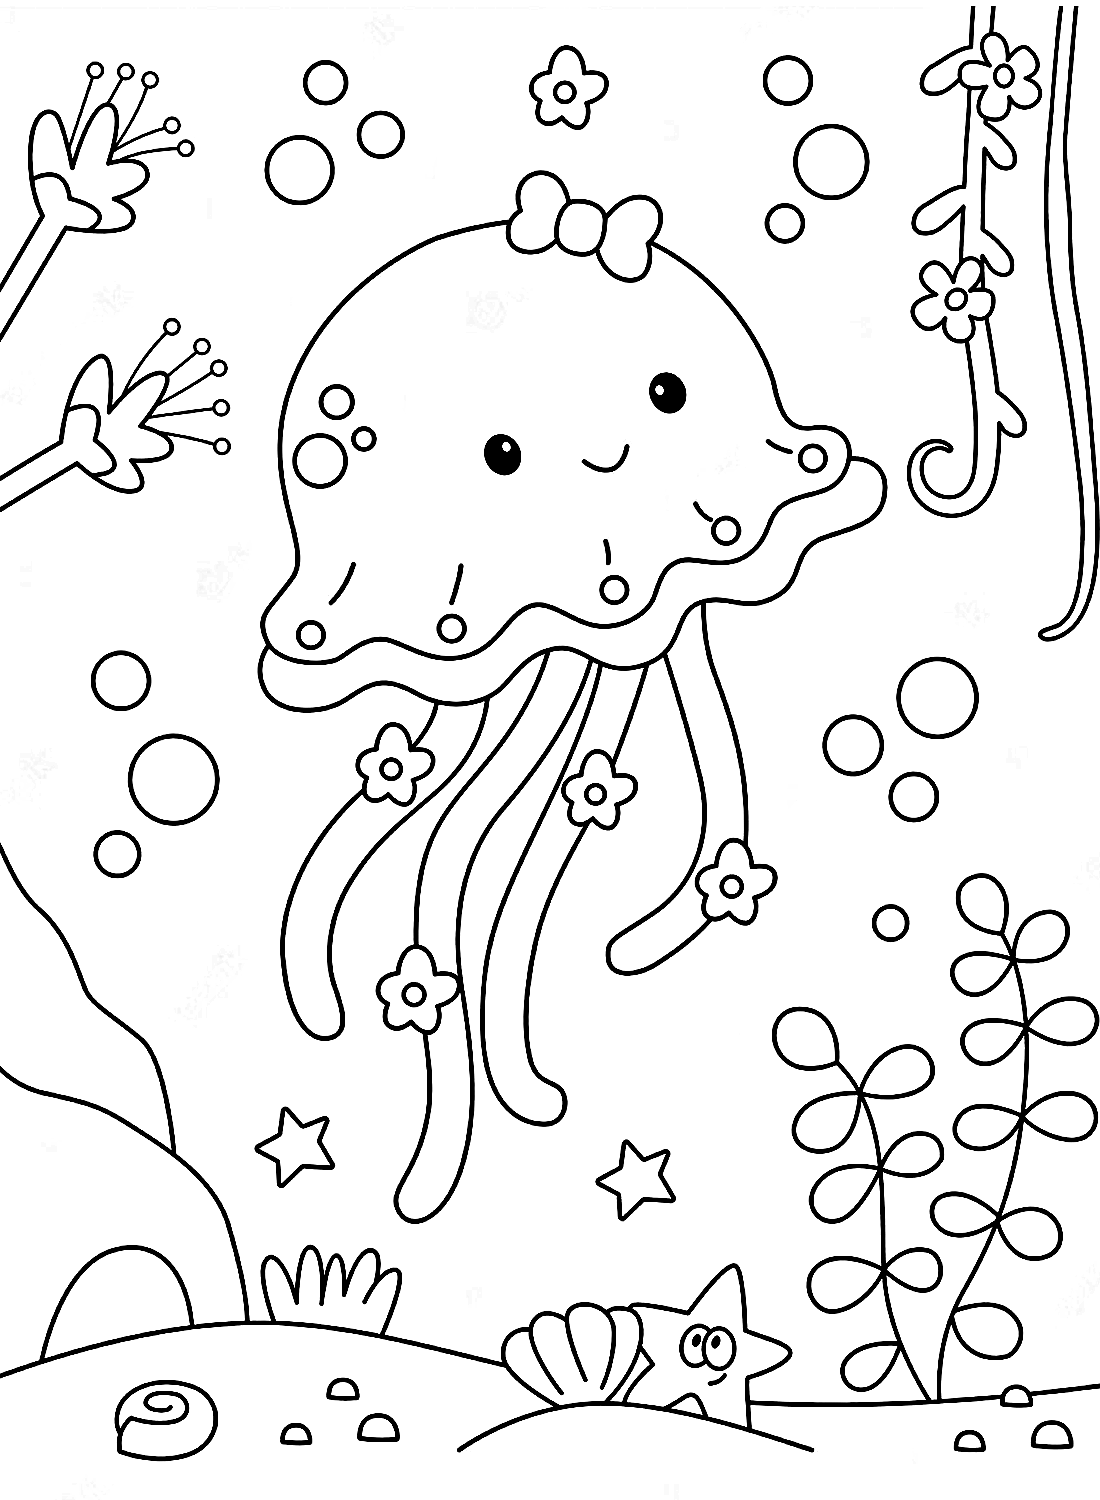 La bellissima medusa da colorare